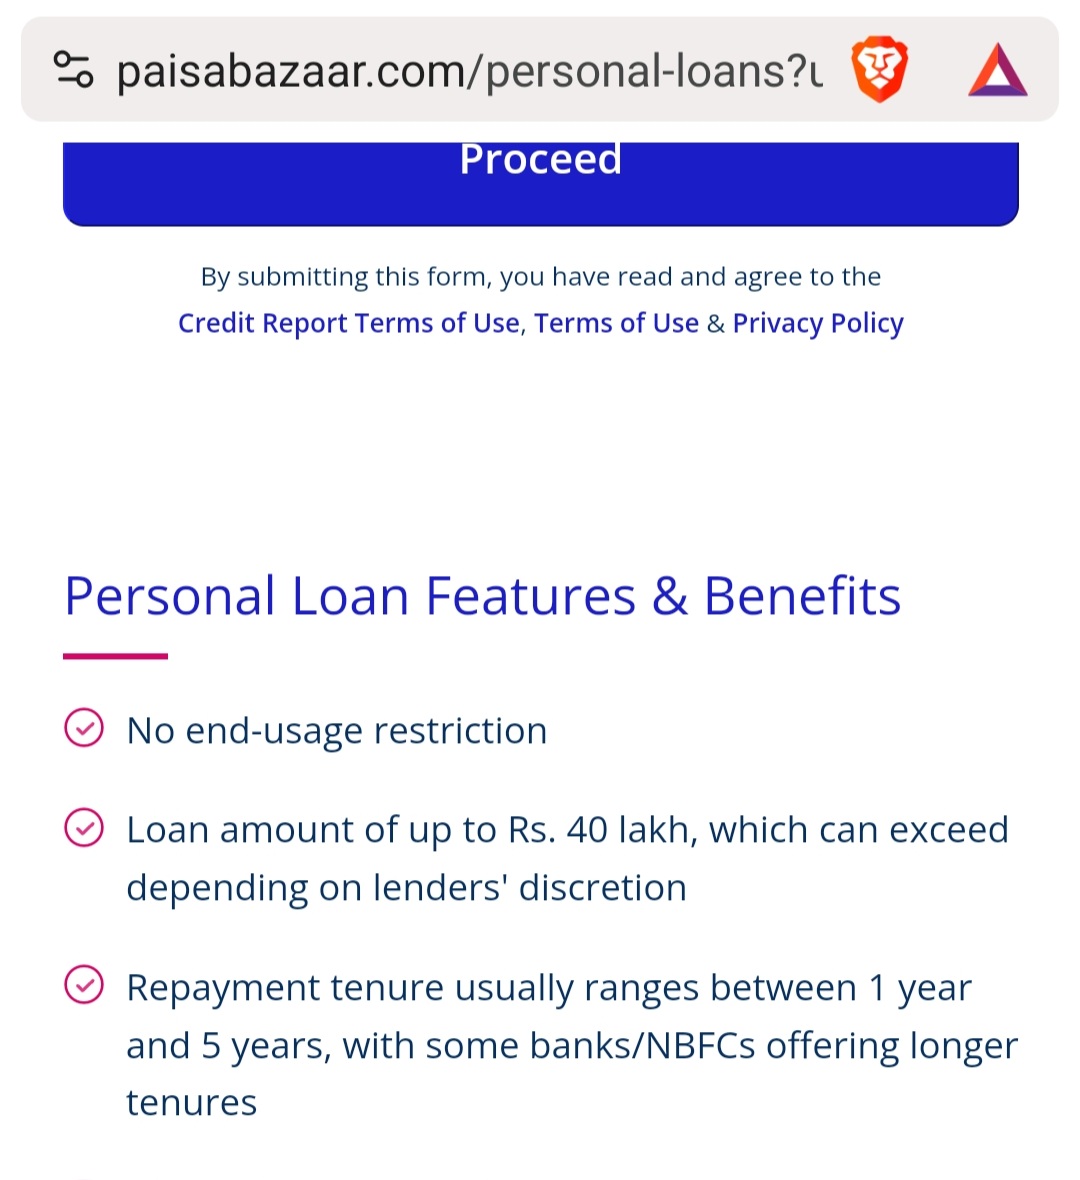 paisabazaar website personal loan features and benefits